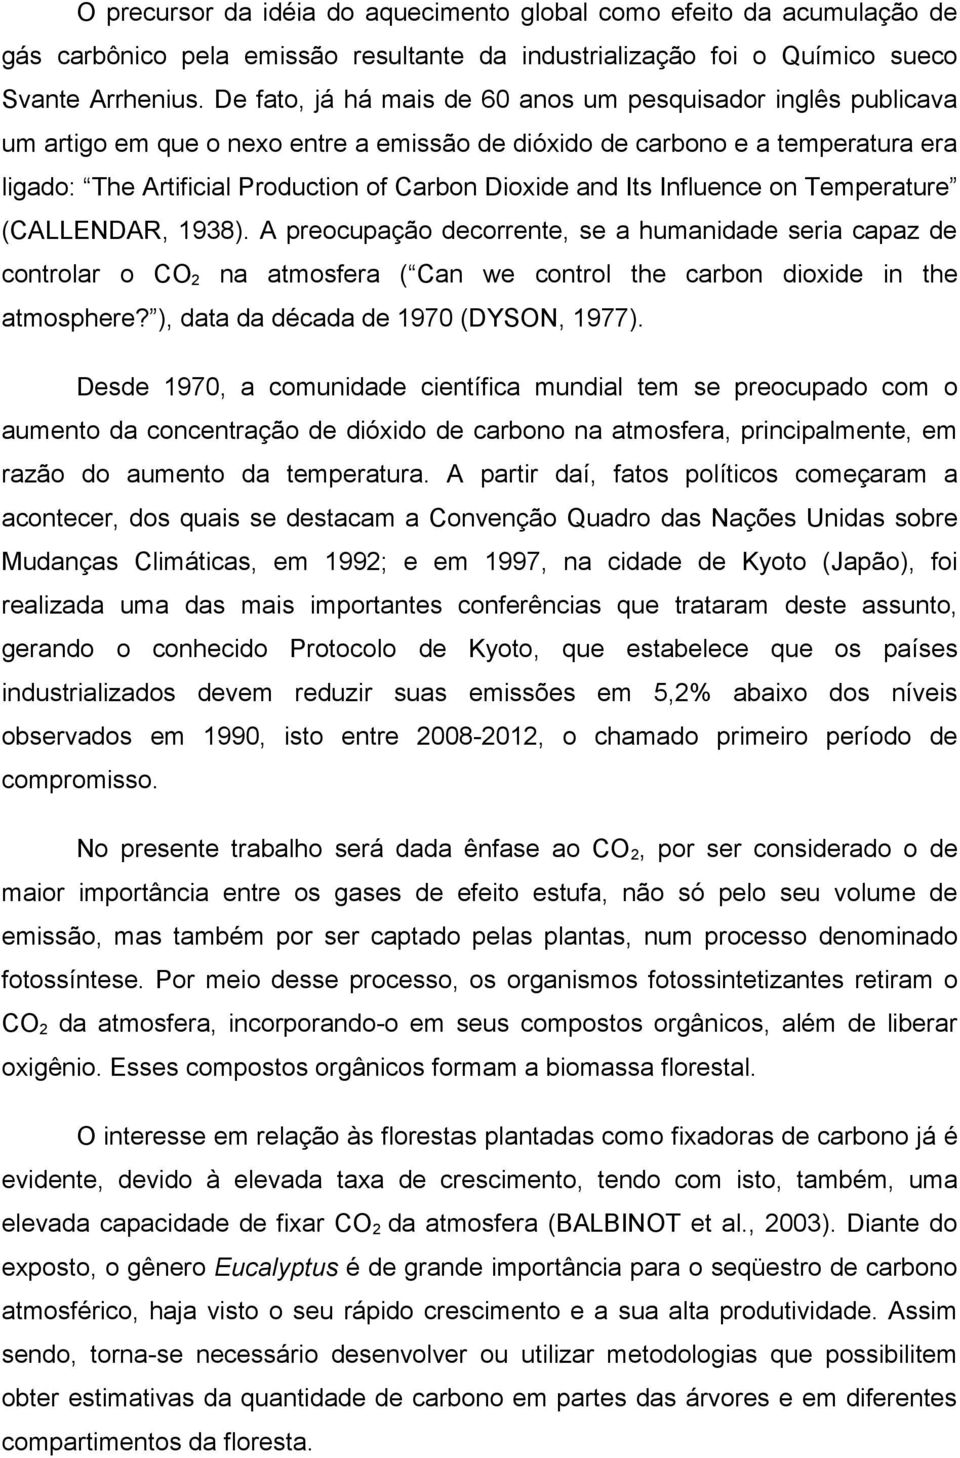 and Its Influence on Temperature (CALLENDAR, 1938). A preocupação decorrente, se a humanidade seria capaz de controlar o CO2 na atmosfera ( Can we control the carbon dioxide in the atmosphere?